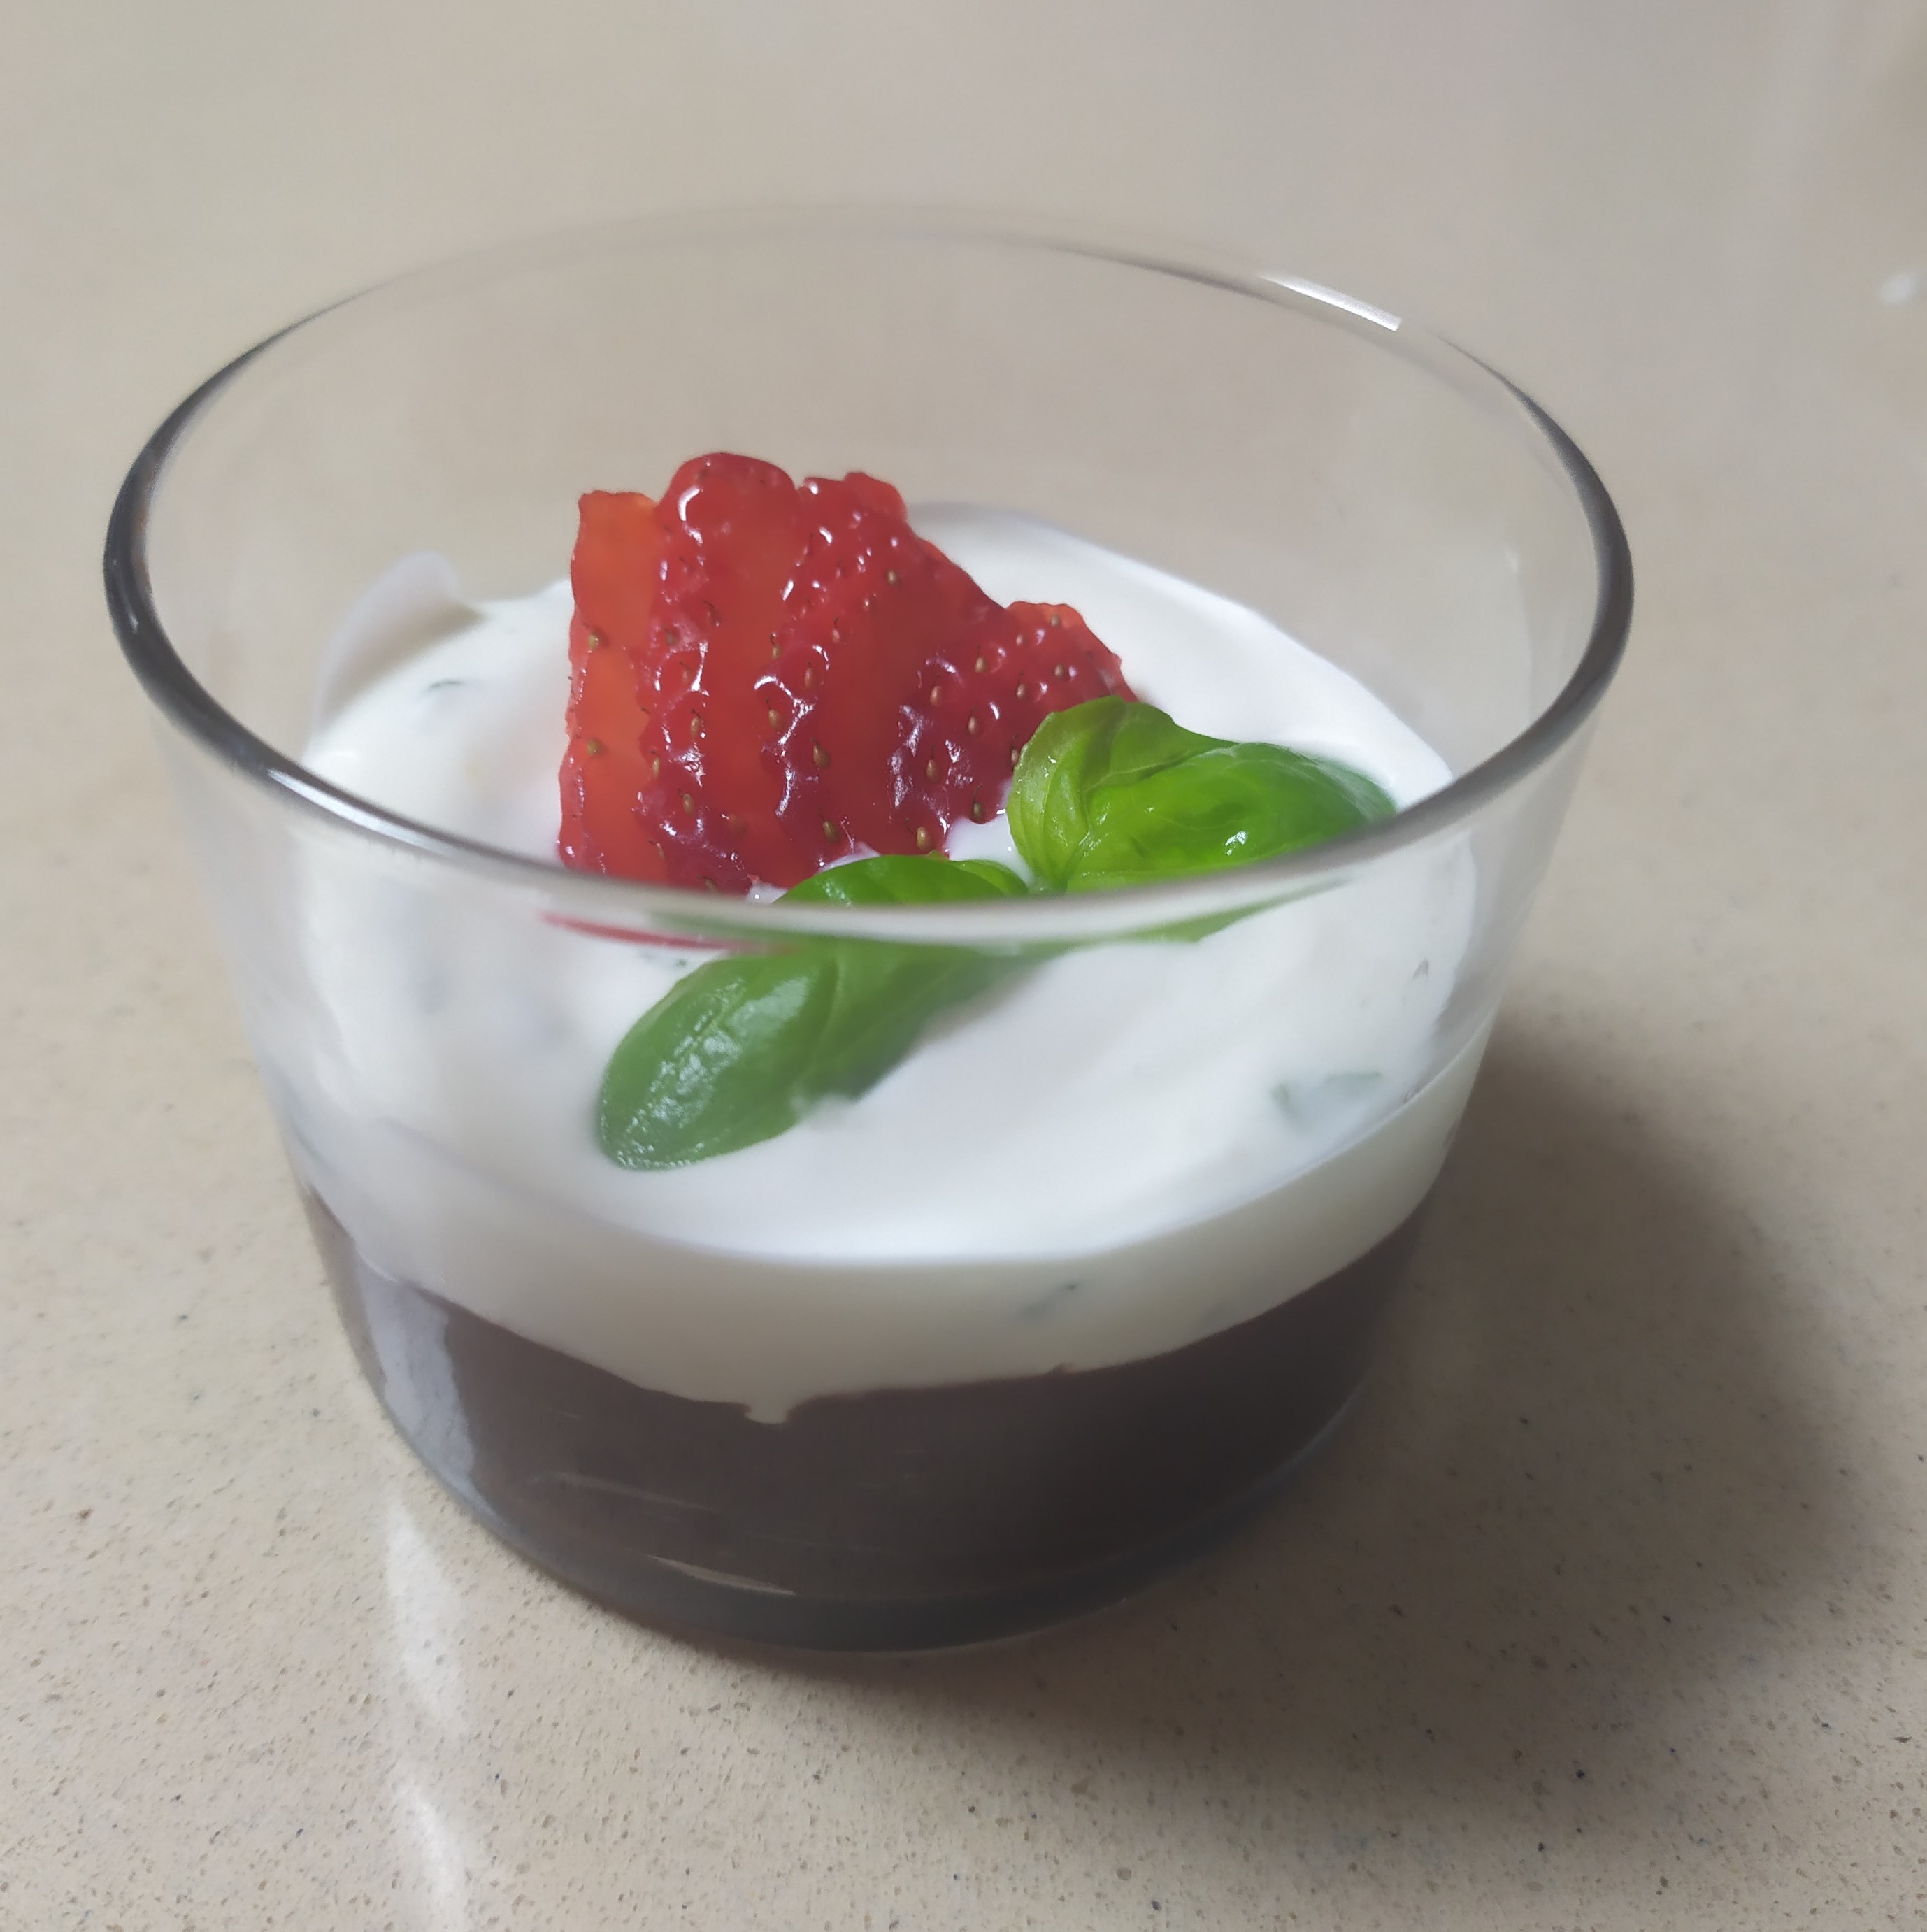 Sobremesa: Cocktail de chocolate com iogurte, hortelã e morango